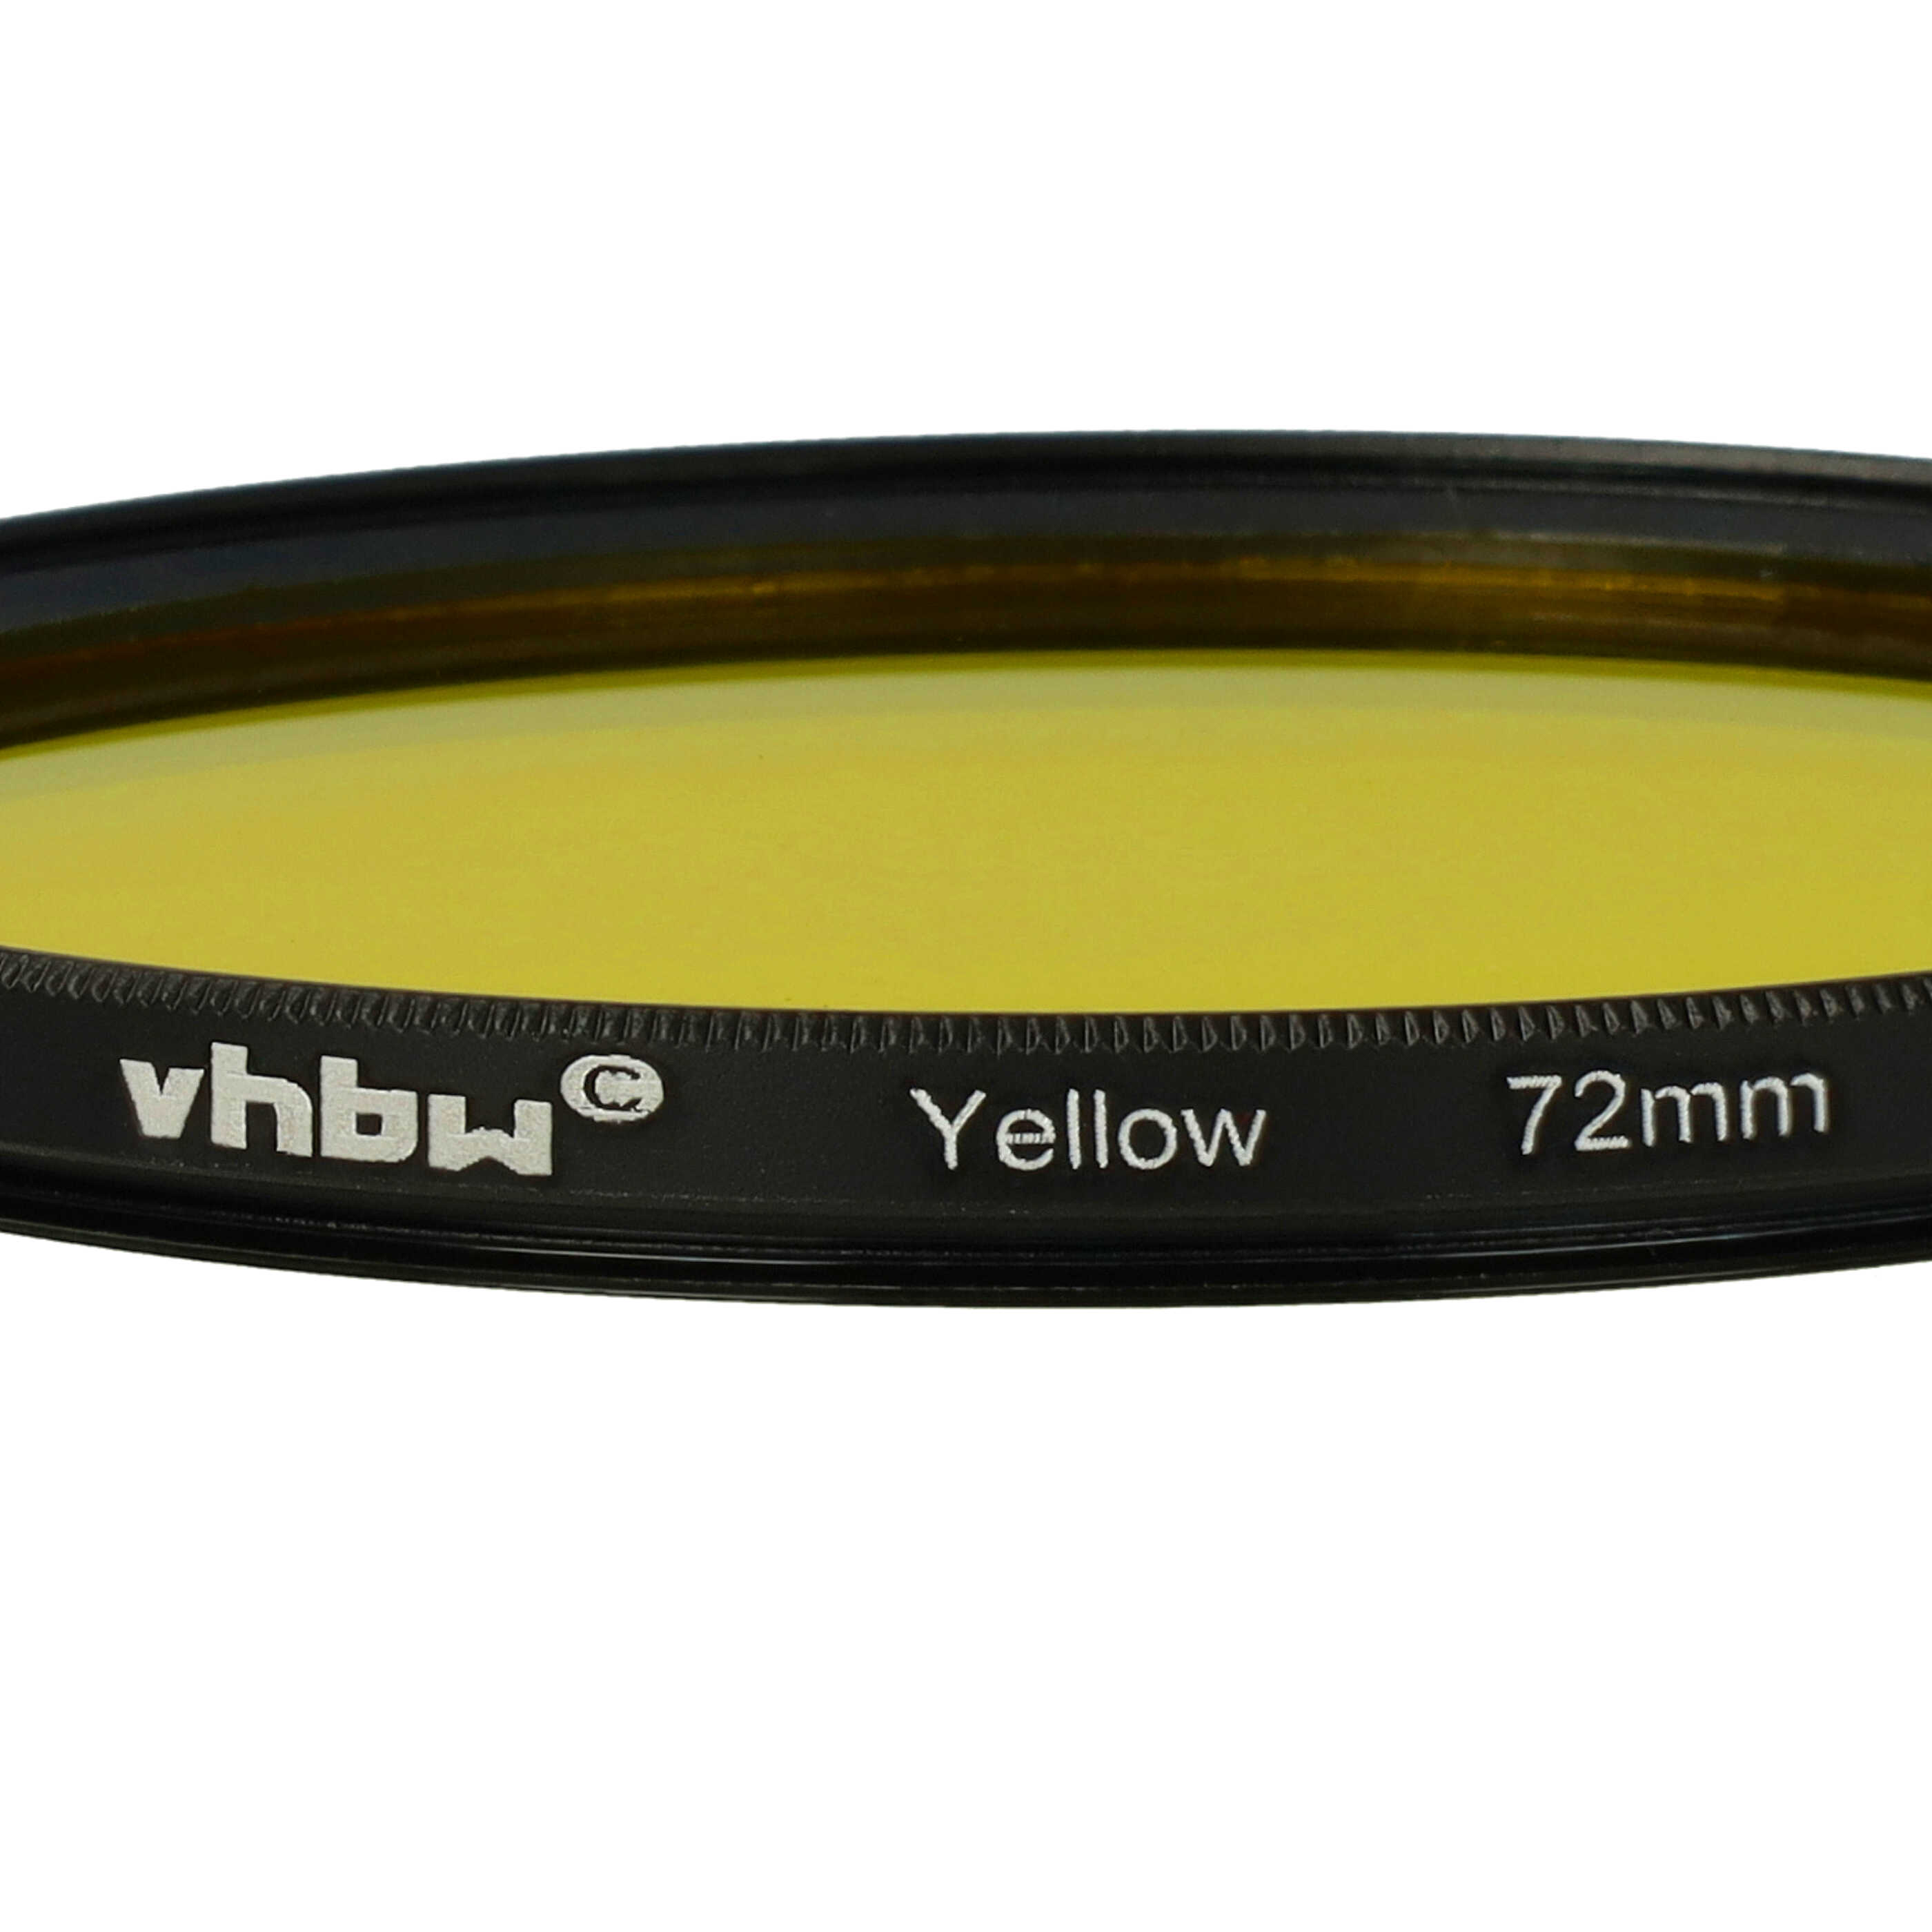 Filtro colorato per obiettivi fotocamera con filettatura da 72 mm - filtro giallo